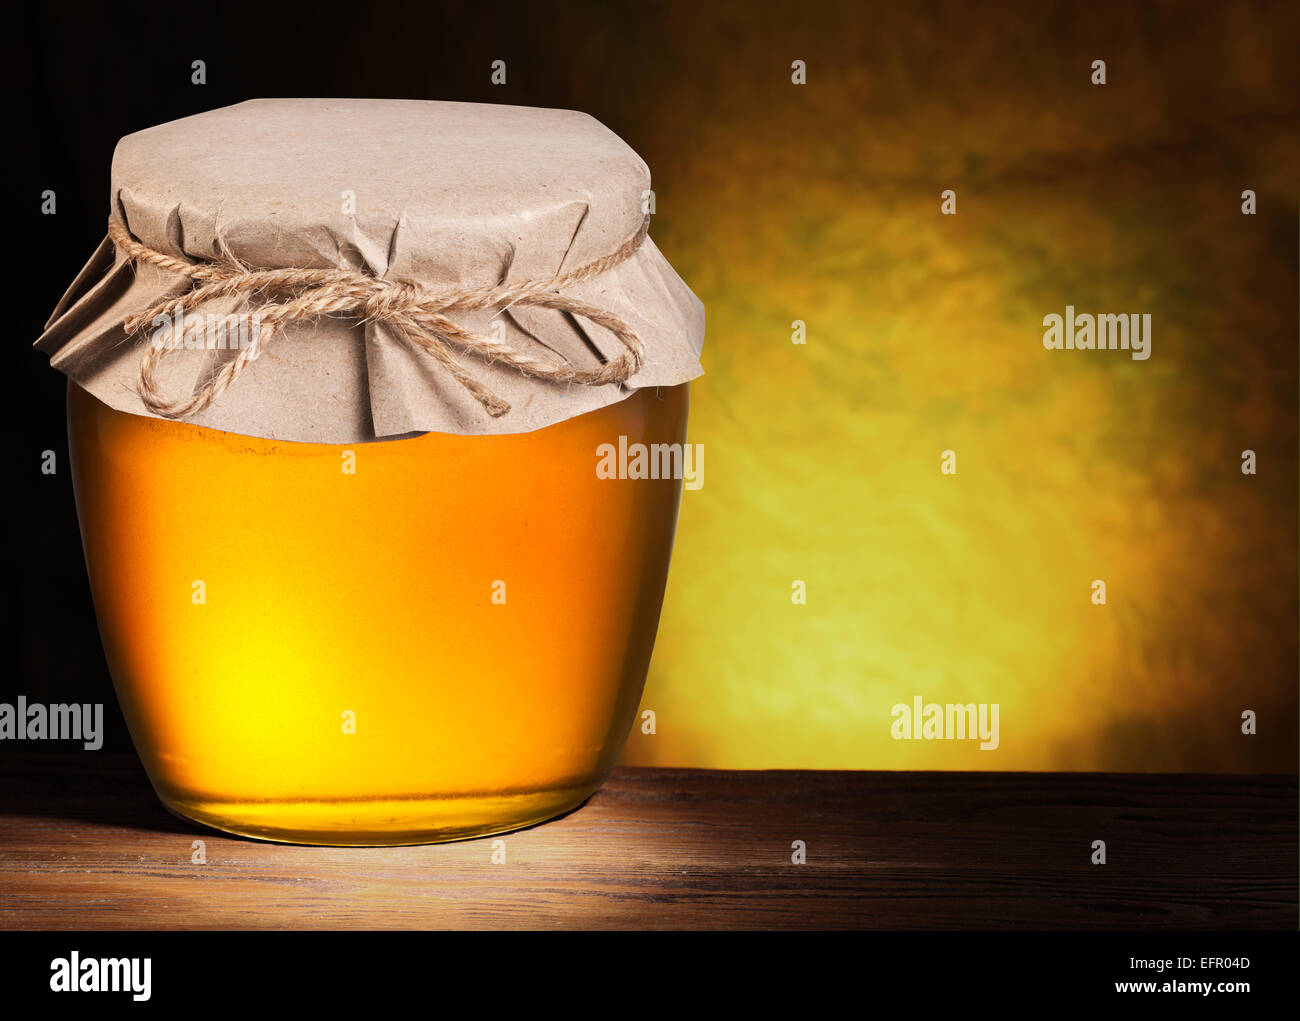 Vaso lleno de miel sobre fondo marrón. Foto de stock